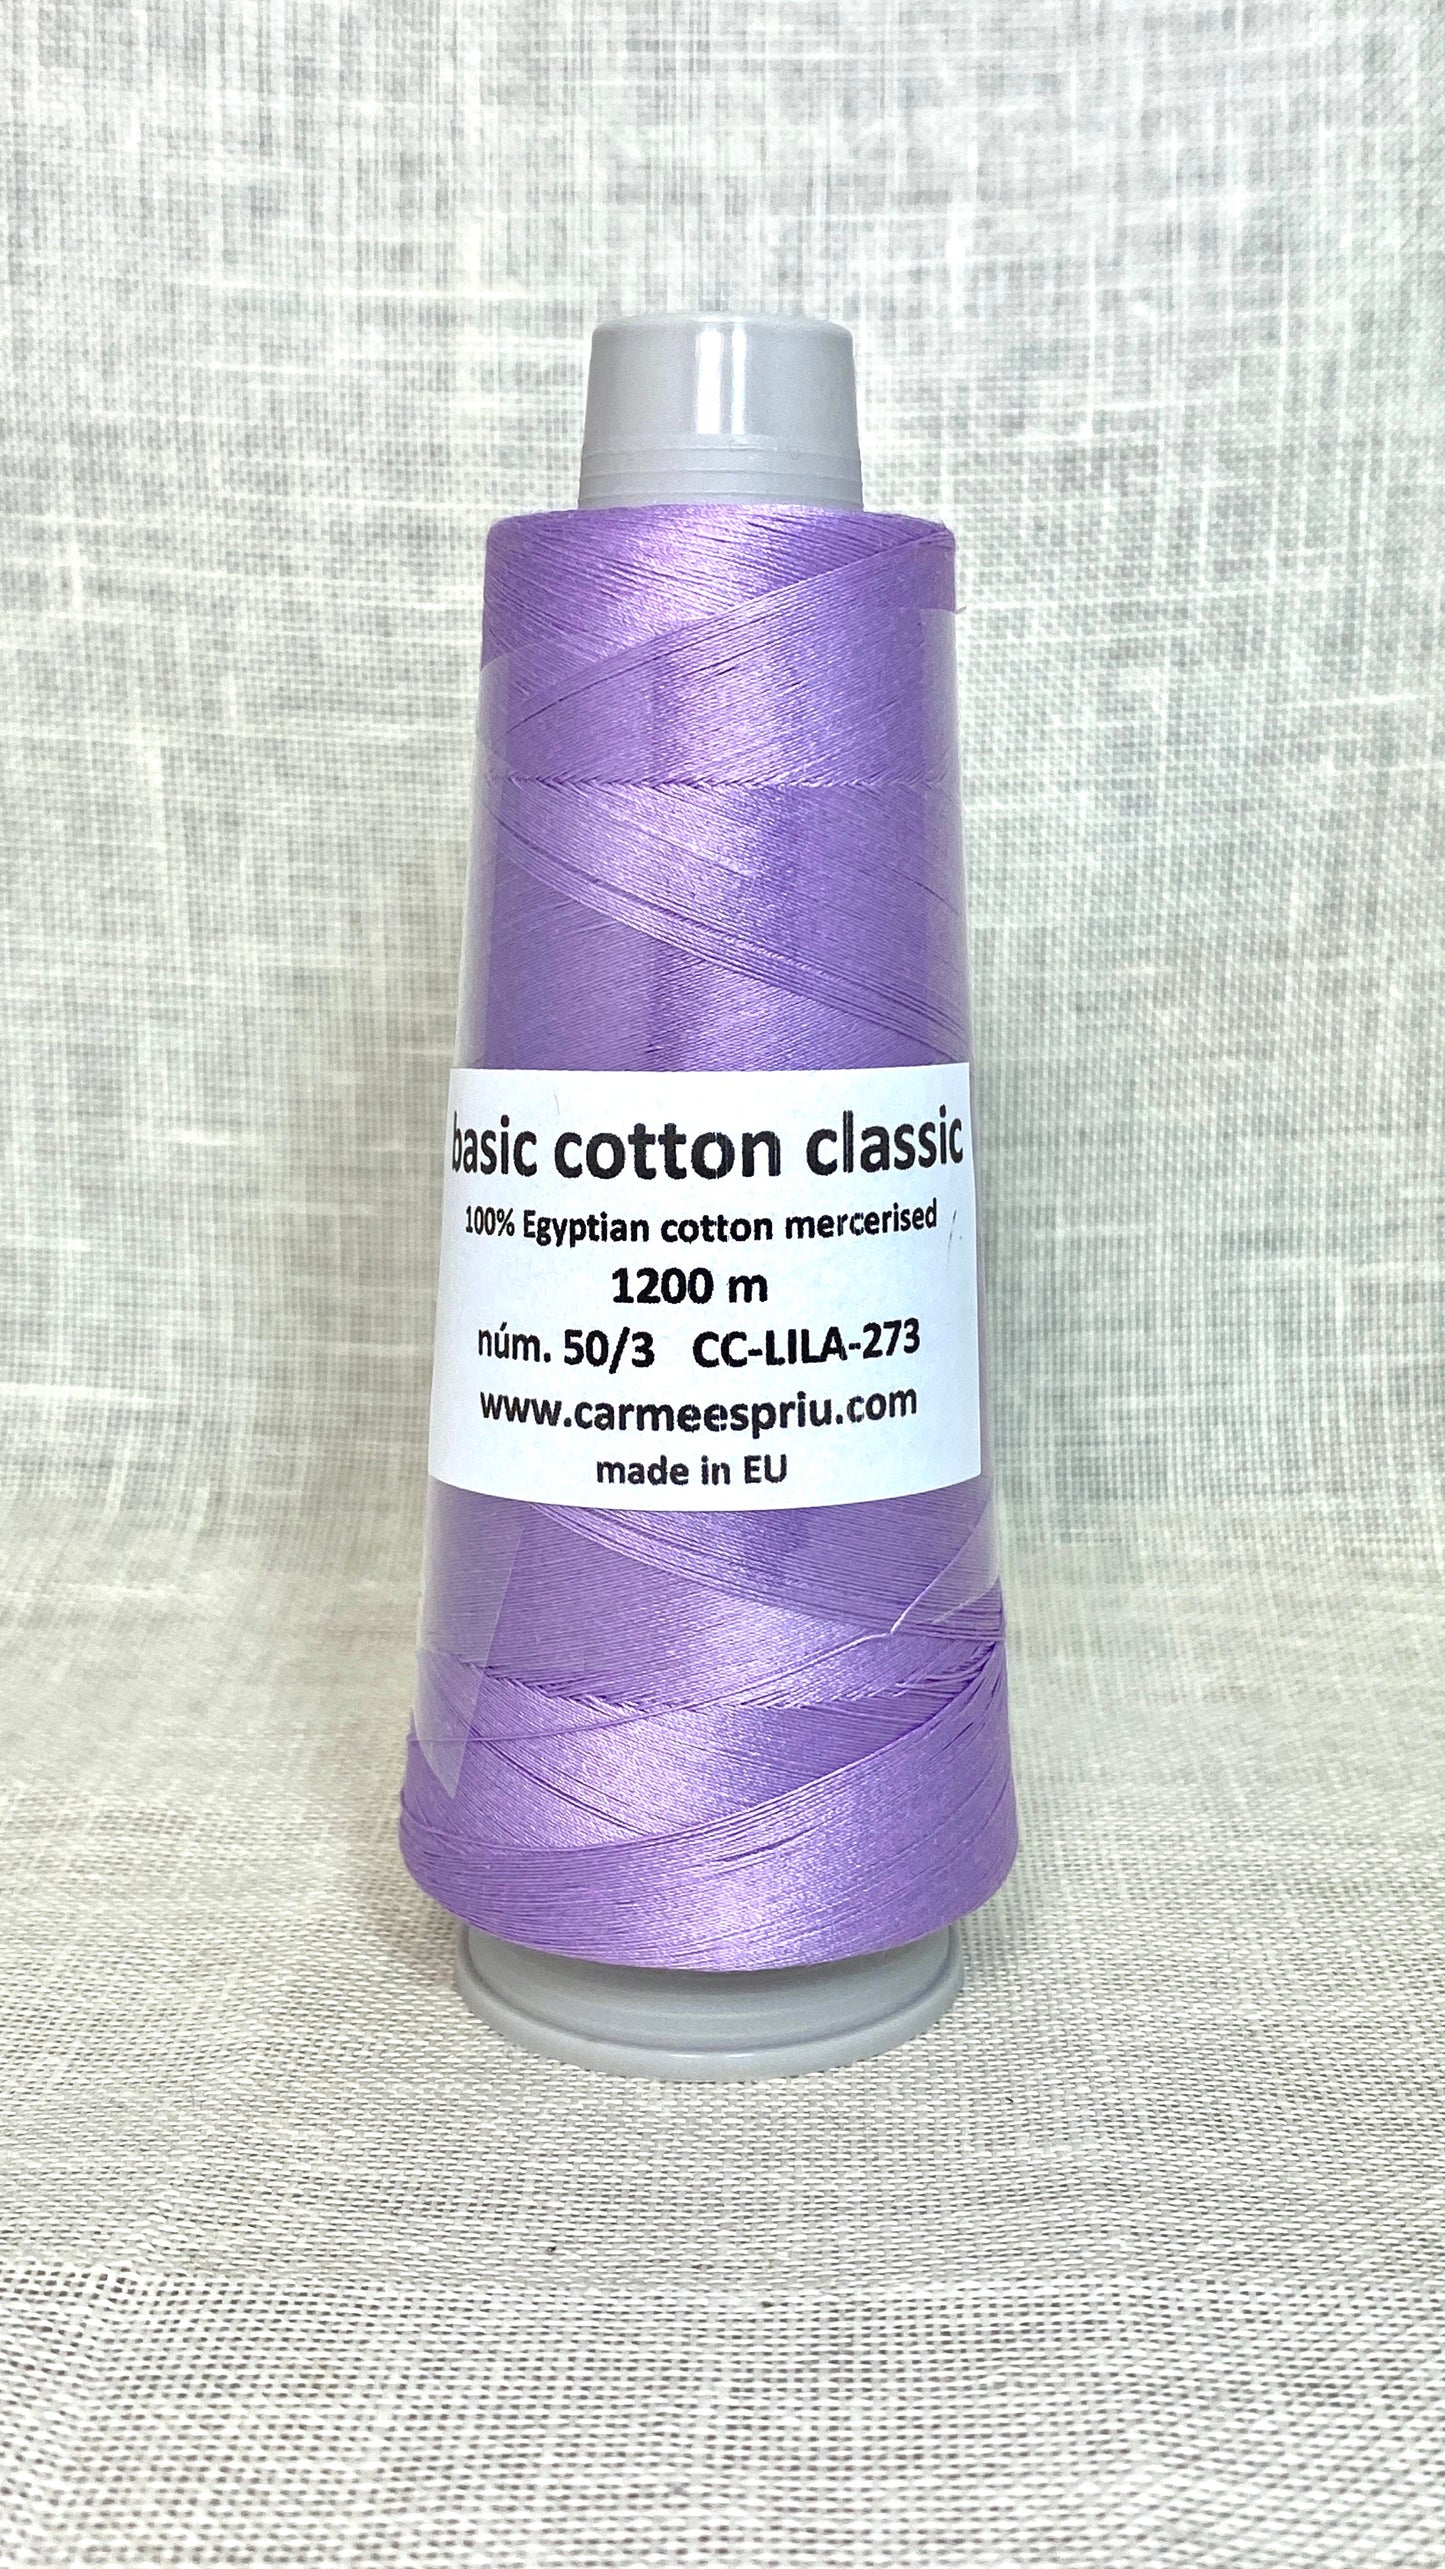 Basic cotton classic lila nº 273